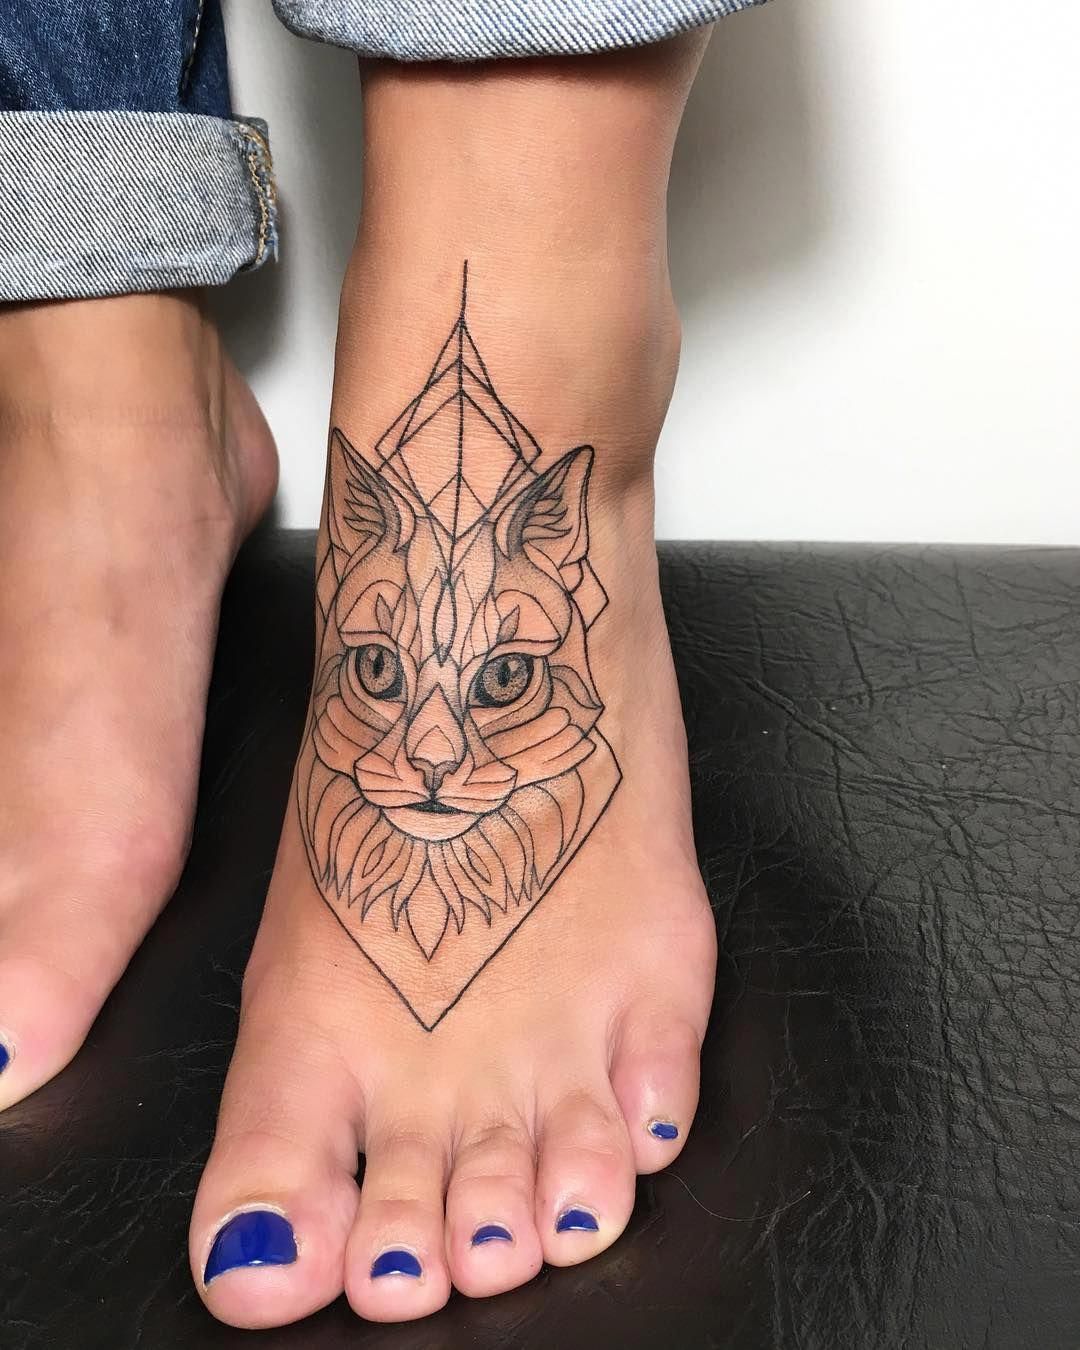 tatuagem feminina geométrica no pé 2021